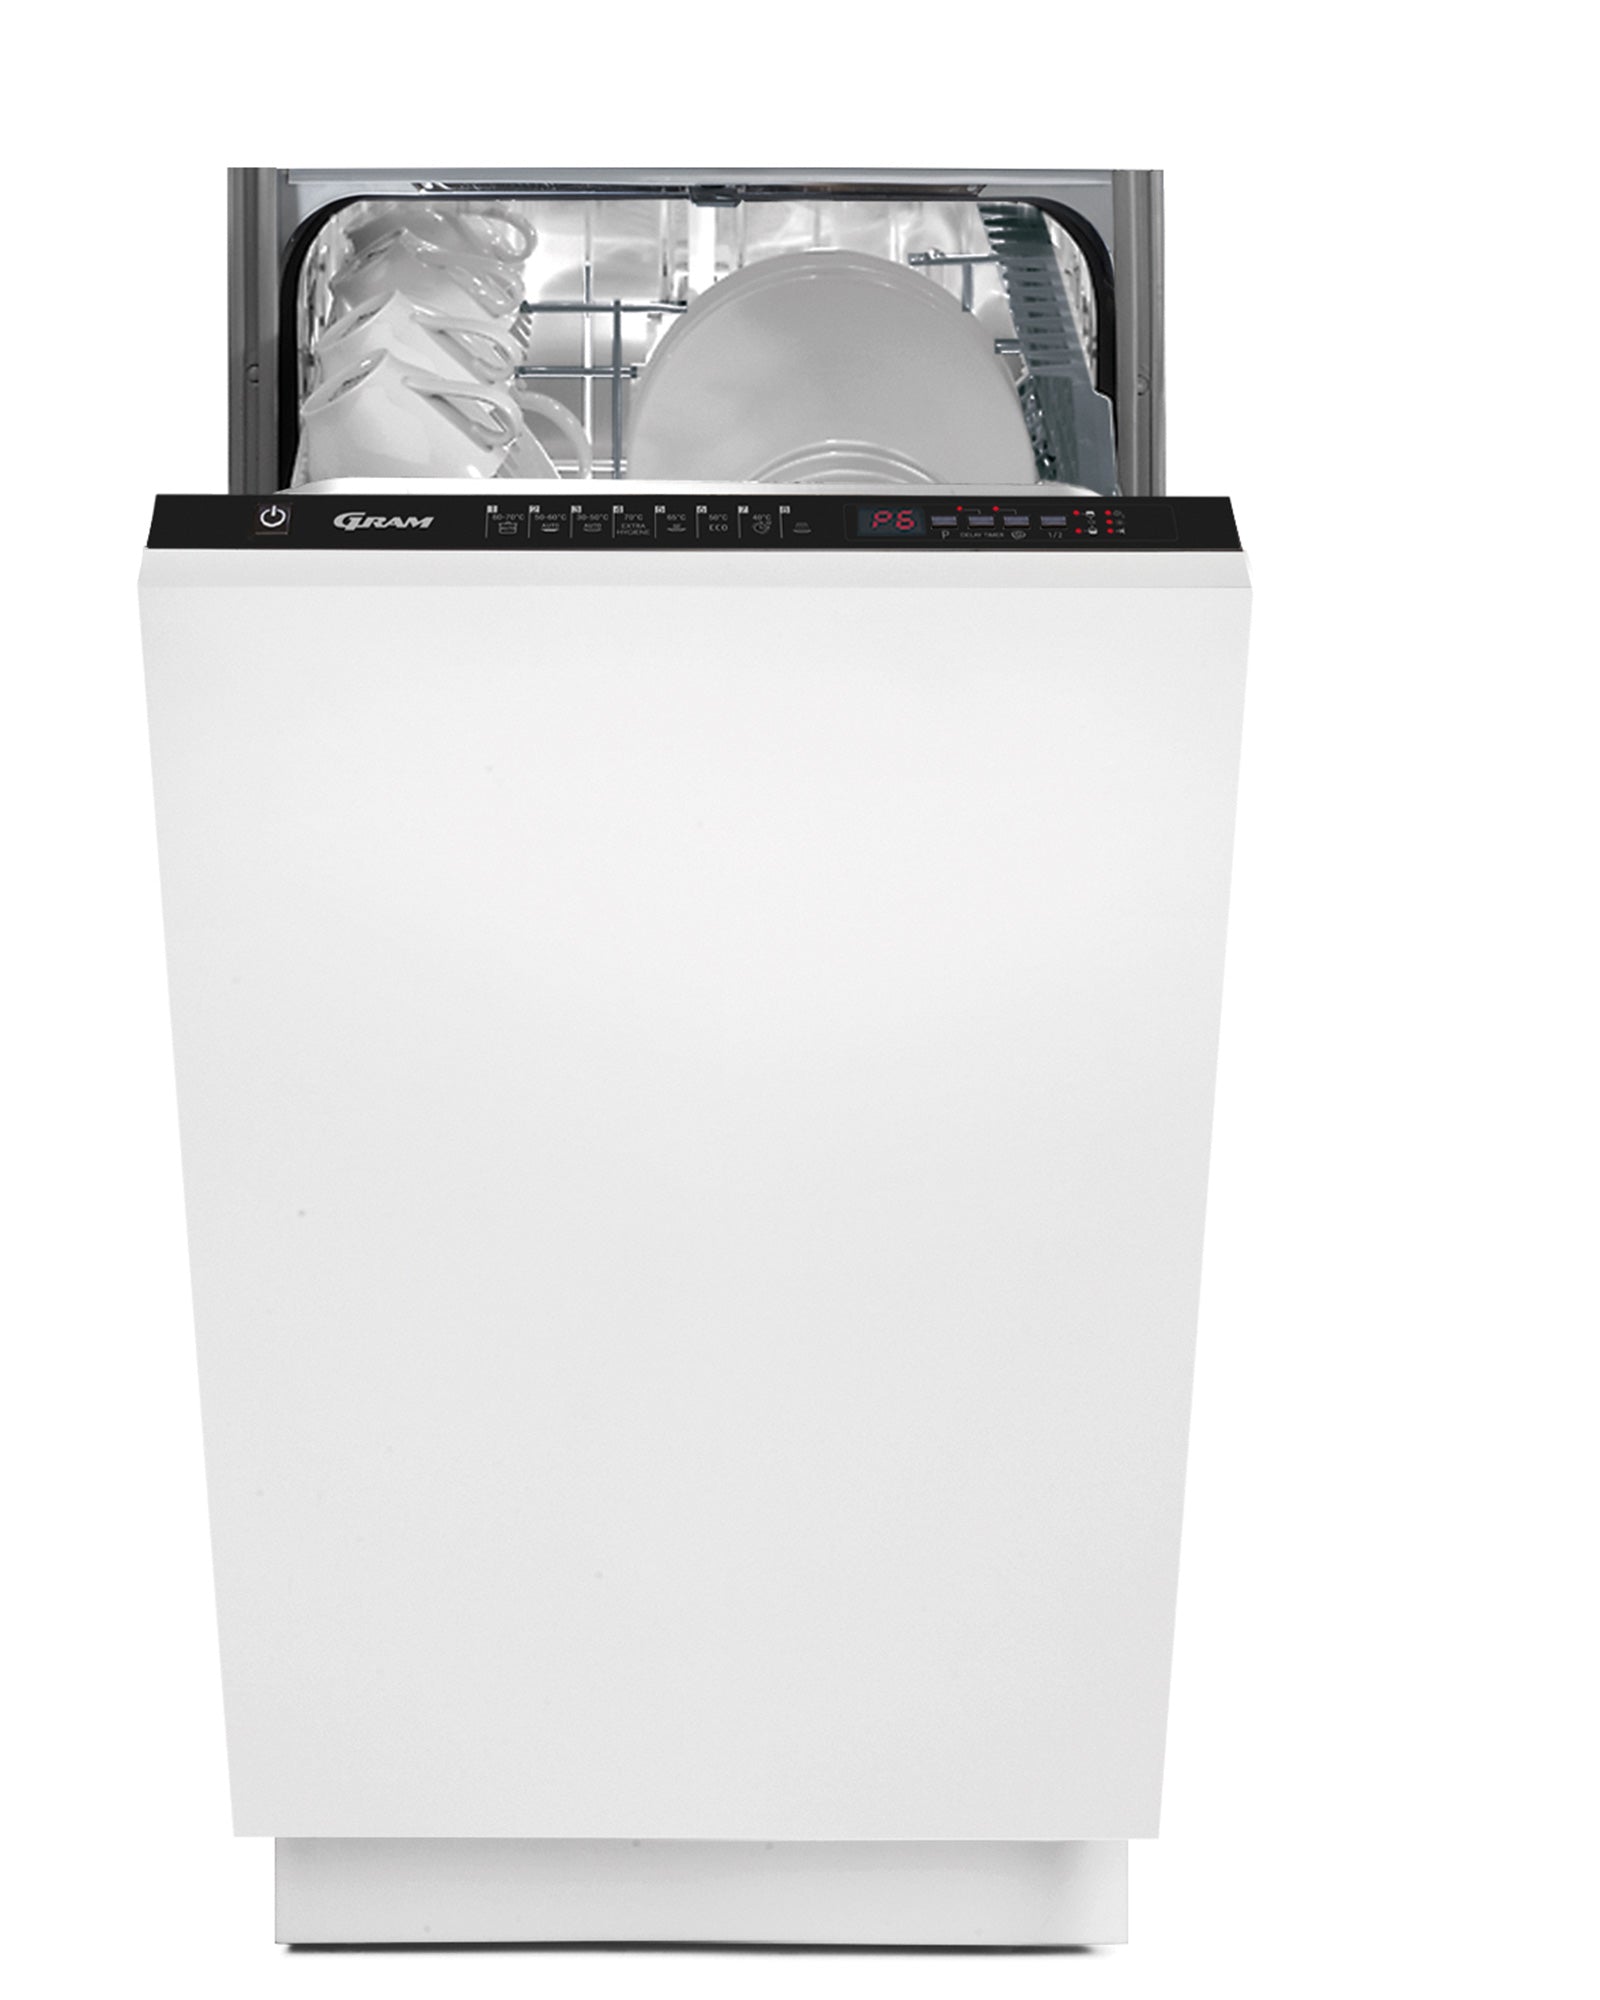 Gram 45 cm. integrerbar opvaskemaskine OMI 45-38T - D10615